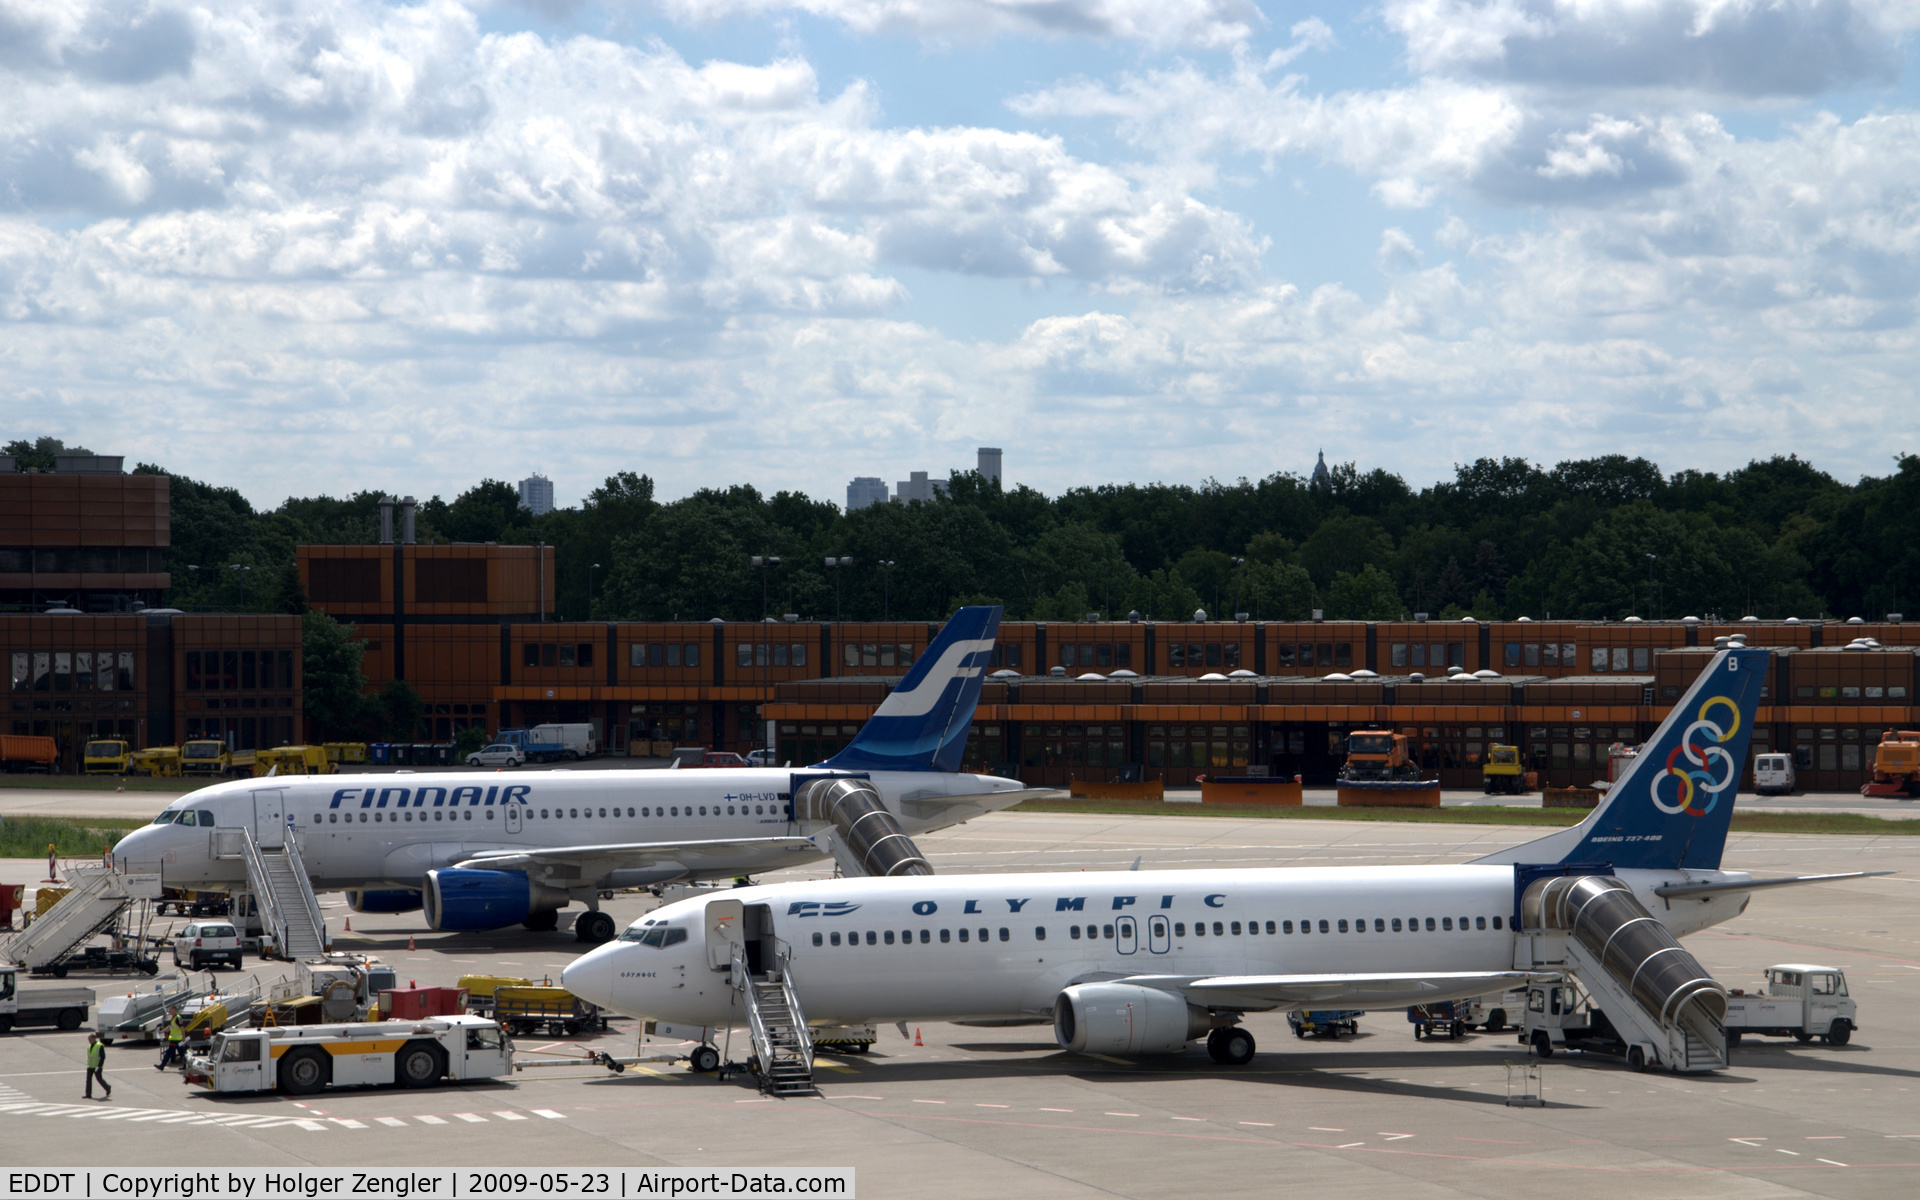 Tegel International Airport (closing in 2011), Berlin Germany (EDDT) - North Europe meets South Europe in Berlin